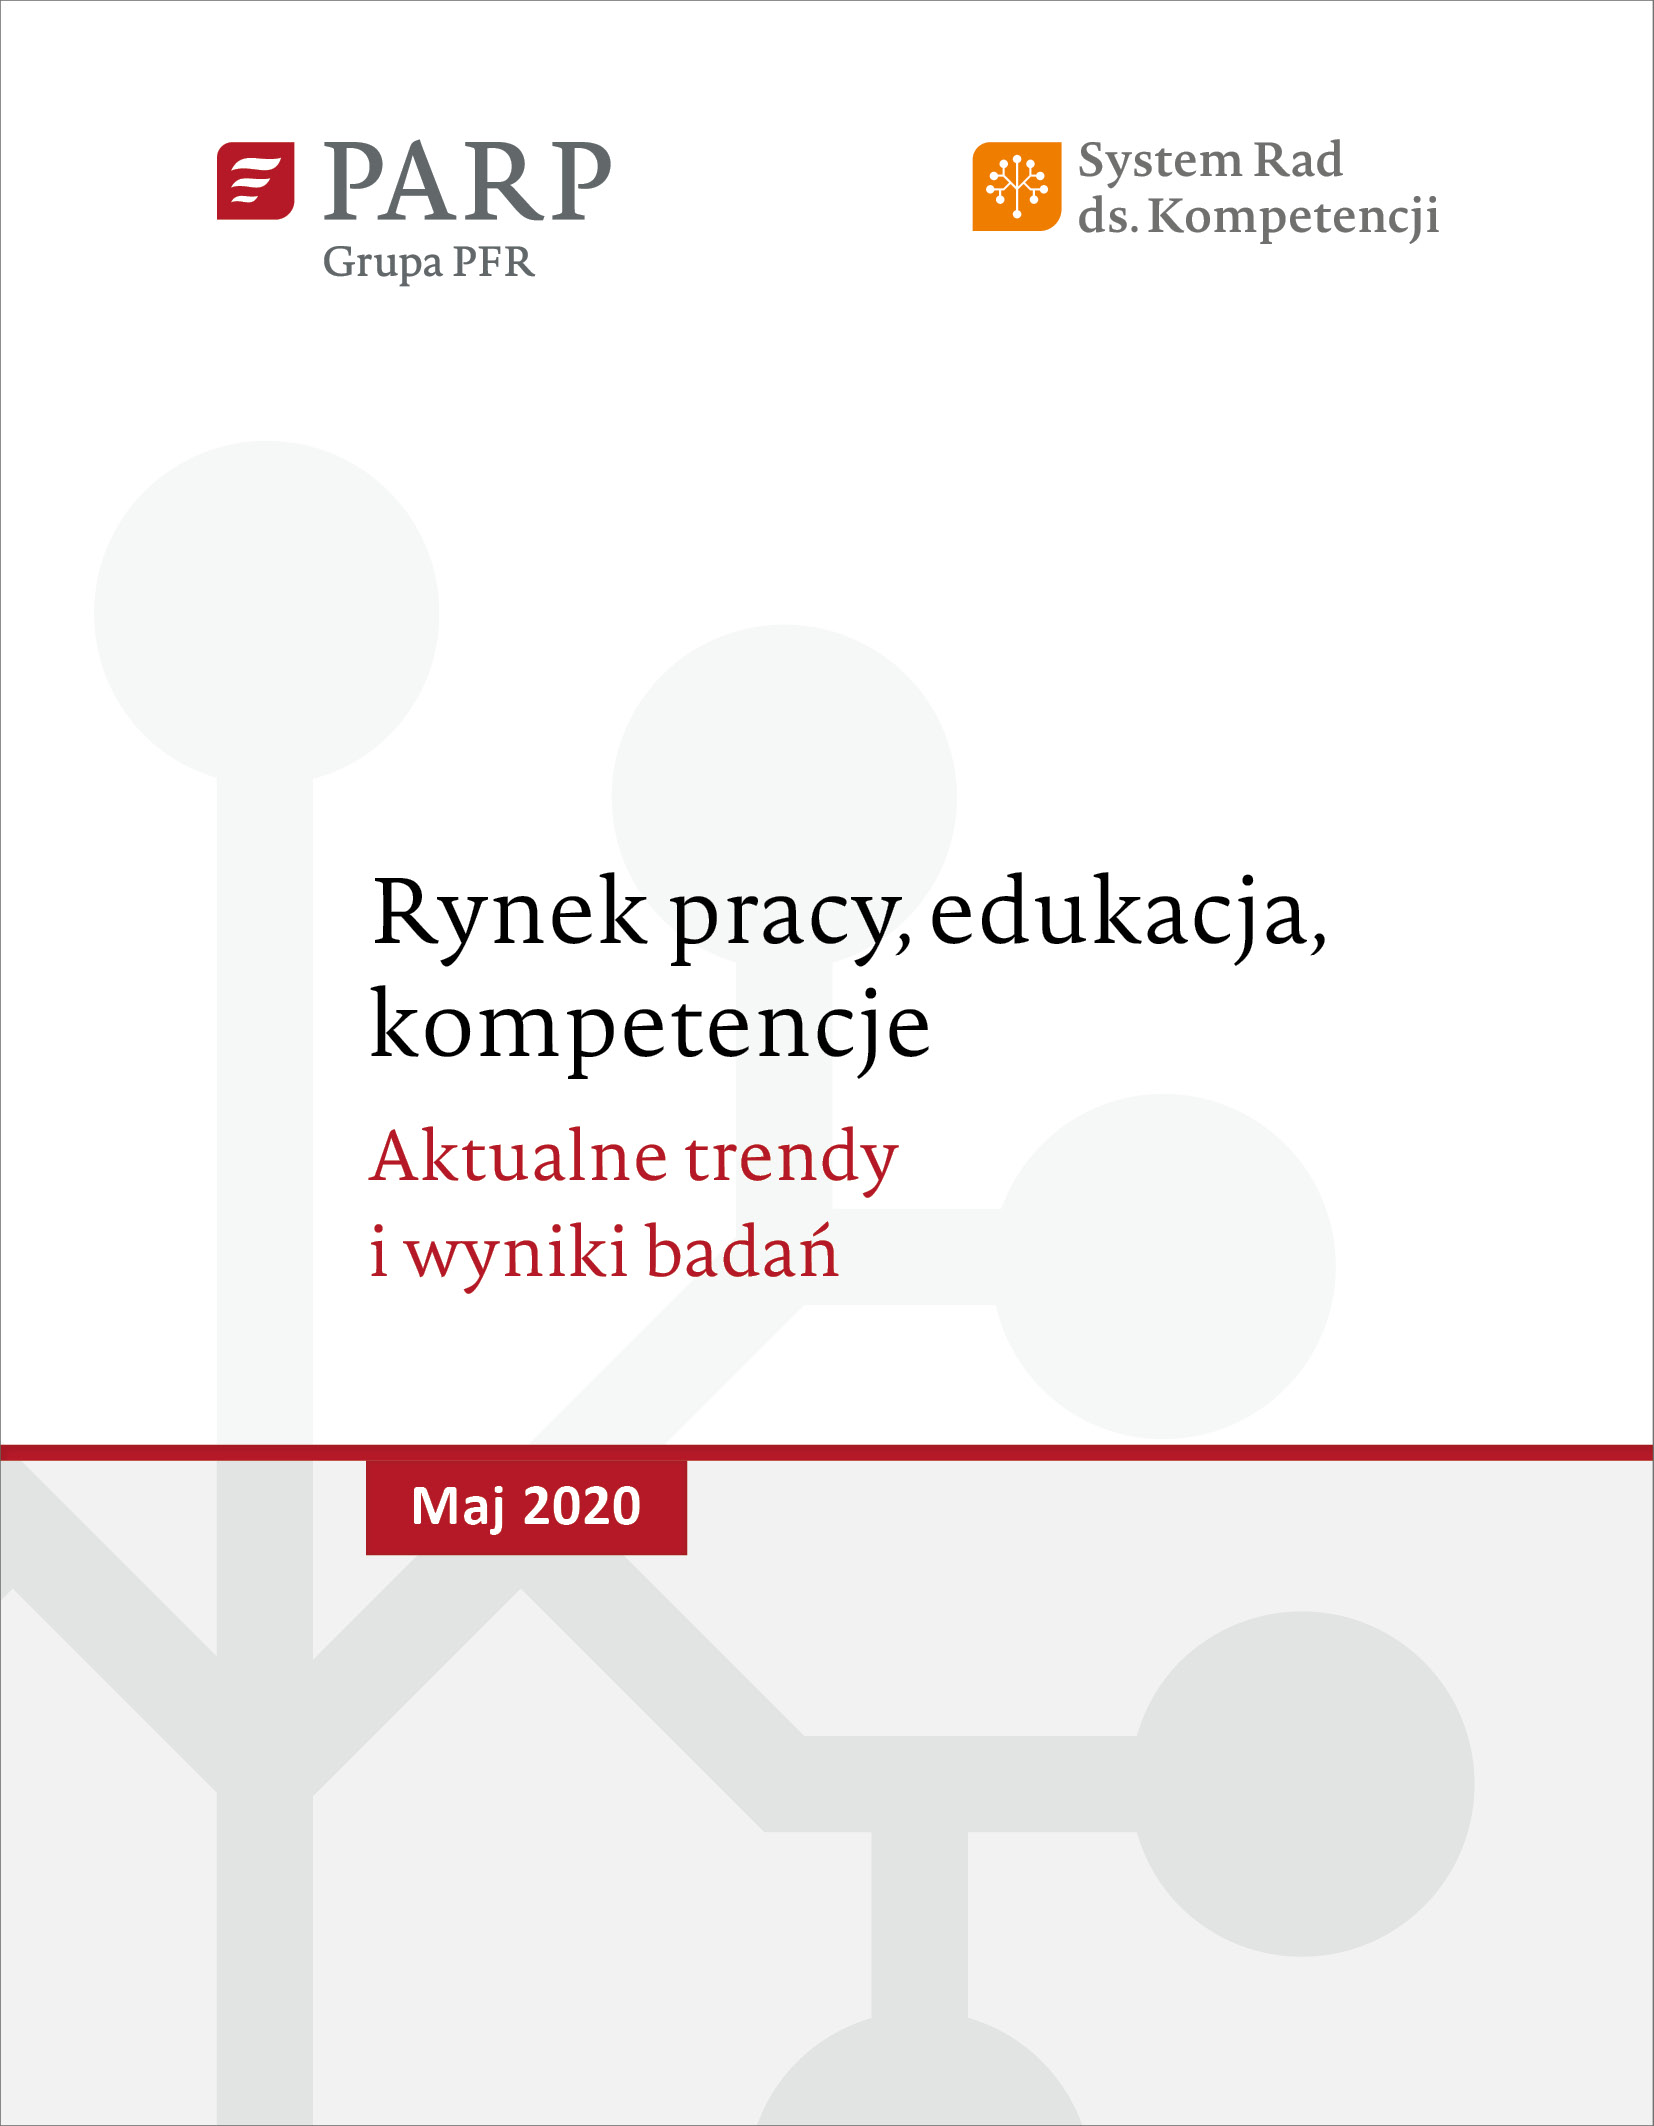 Rynek pracy, edukacja, kompetencje - maj 2020